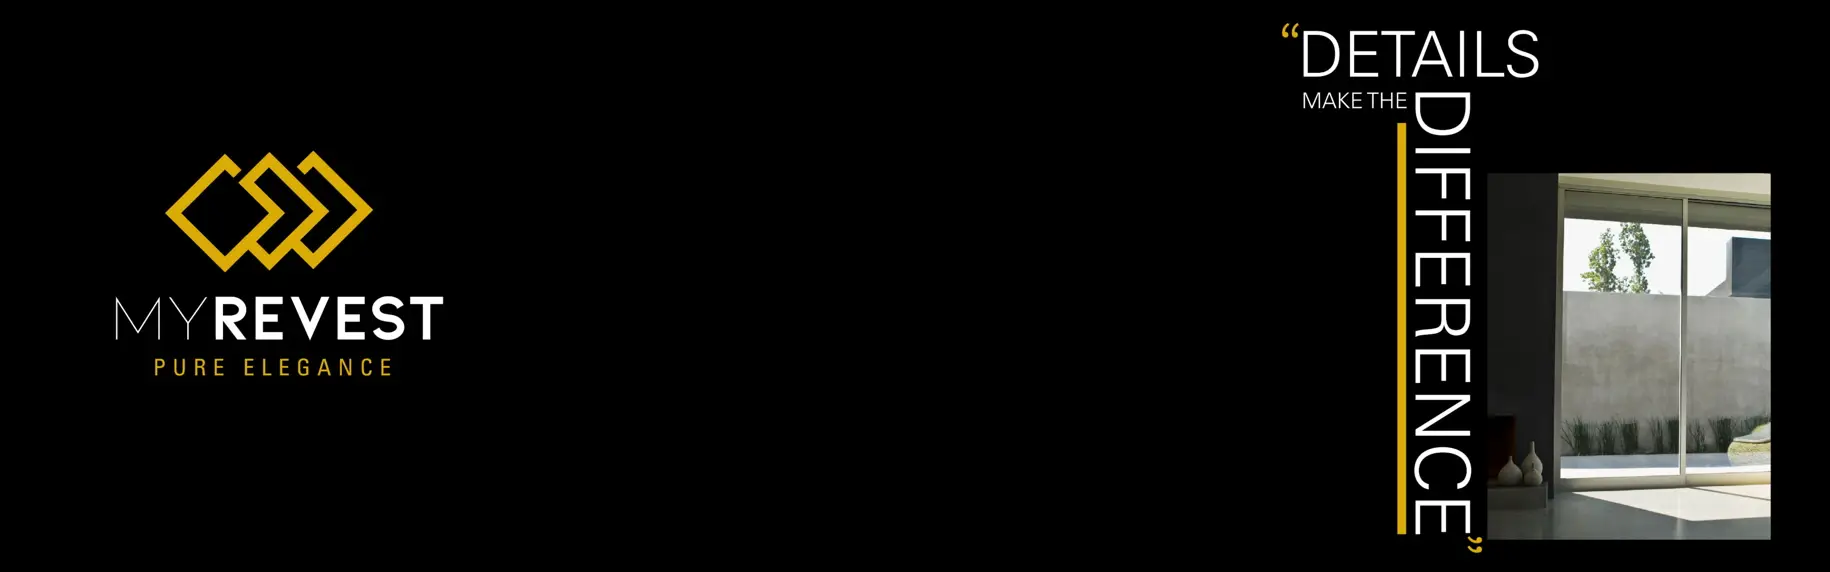 Finitura del pavimento in microcemento con l'applicazione della cera My Wax Plus e a sinistra il logo di MyRevest